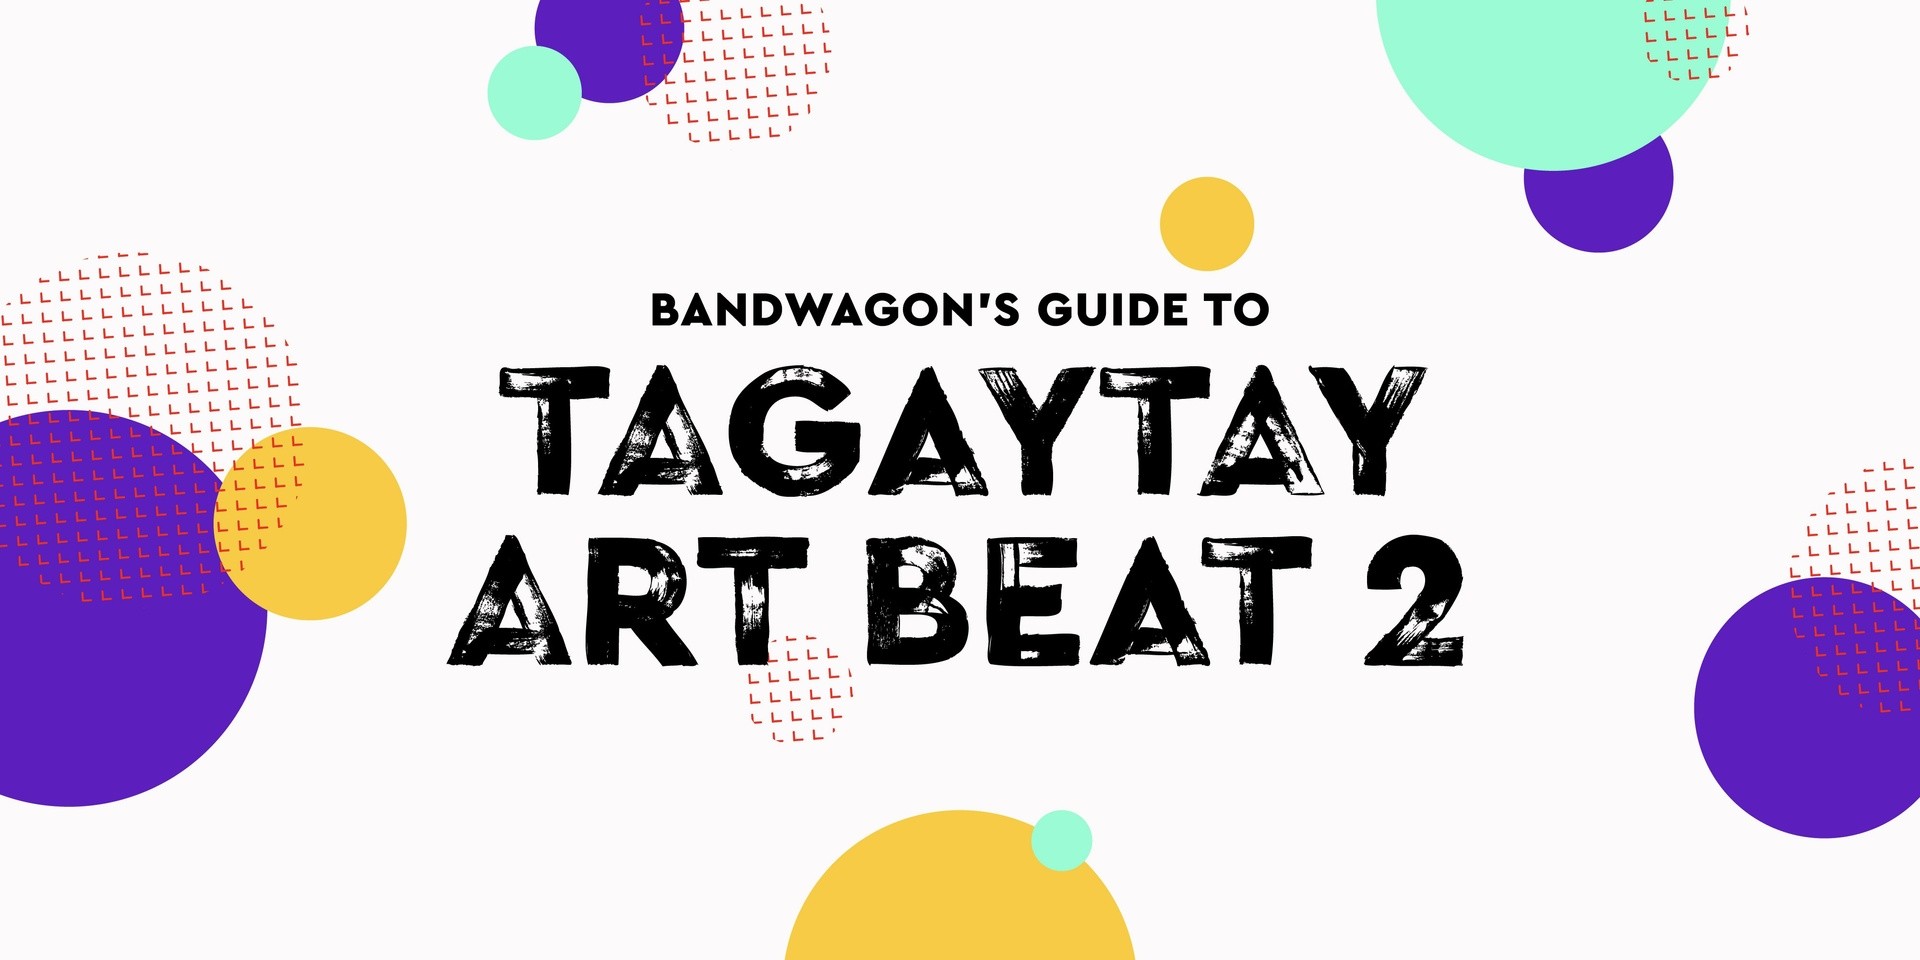 Bandwagon's Guide to Tagaytay Art Beat 2